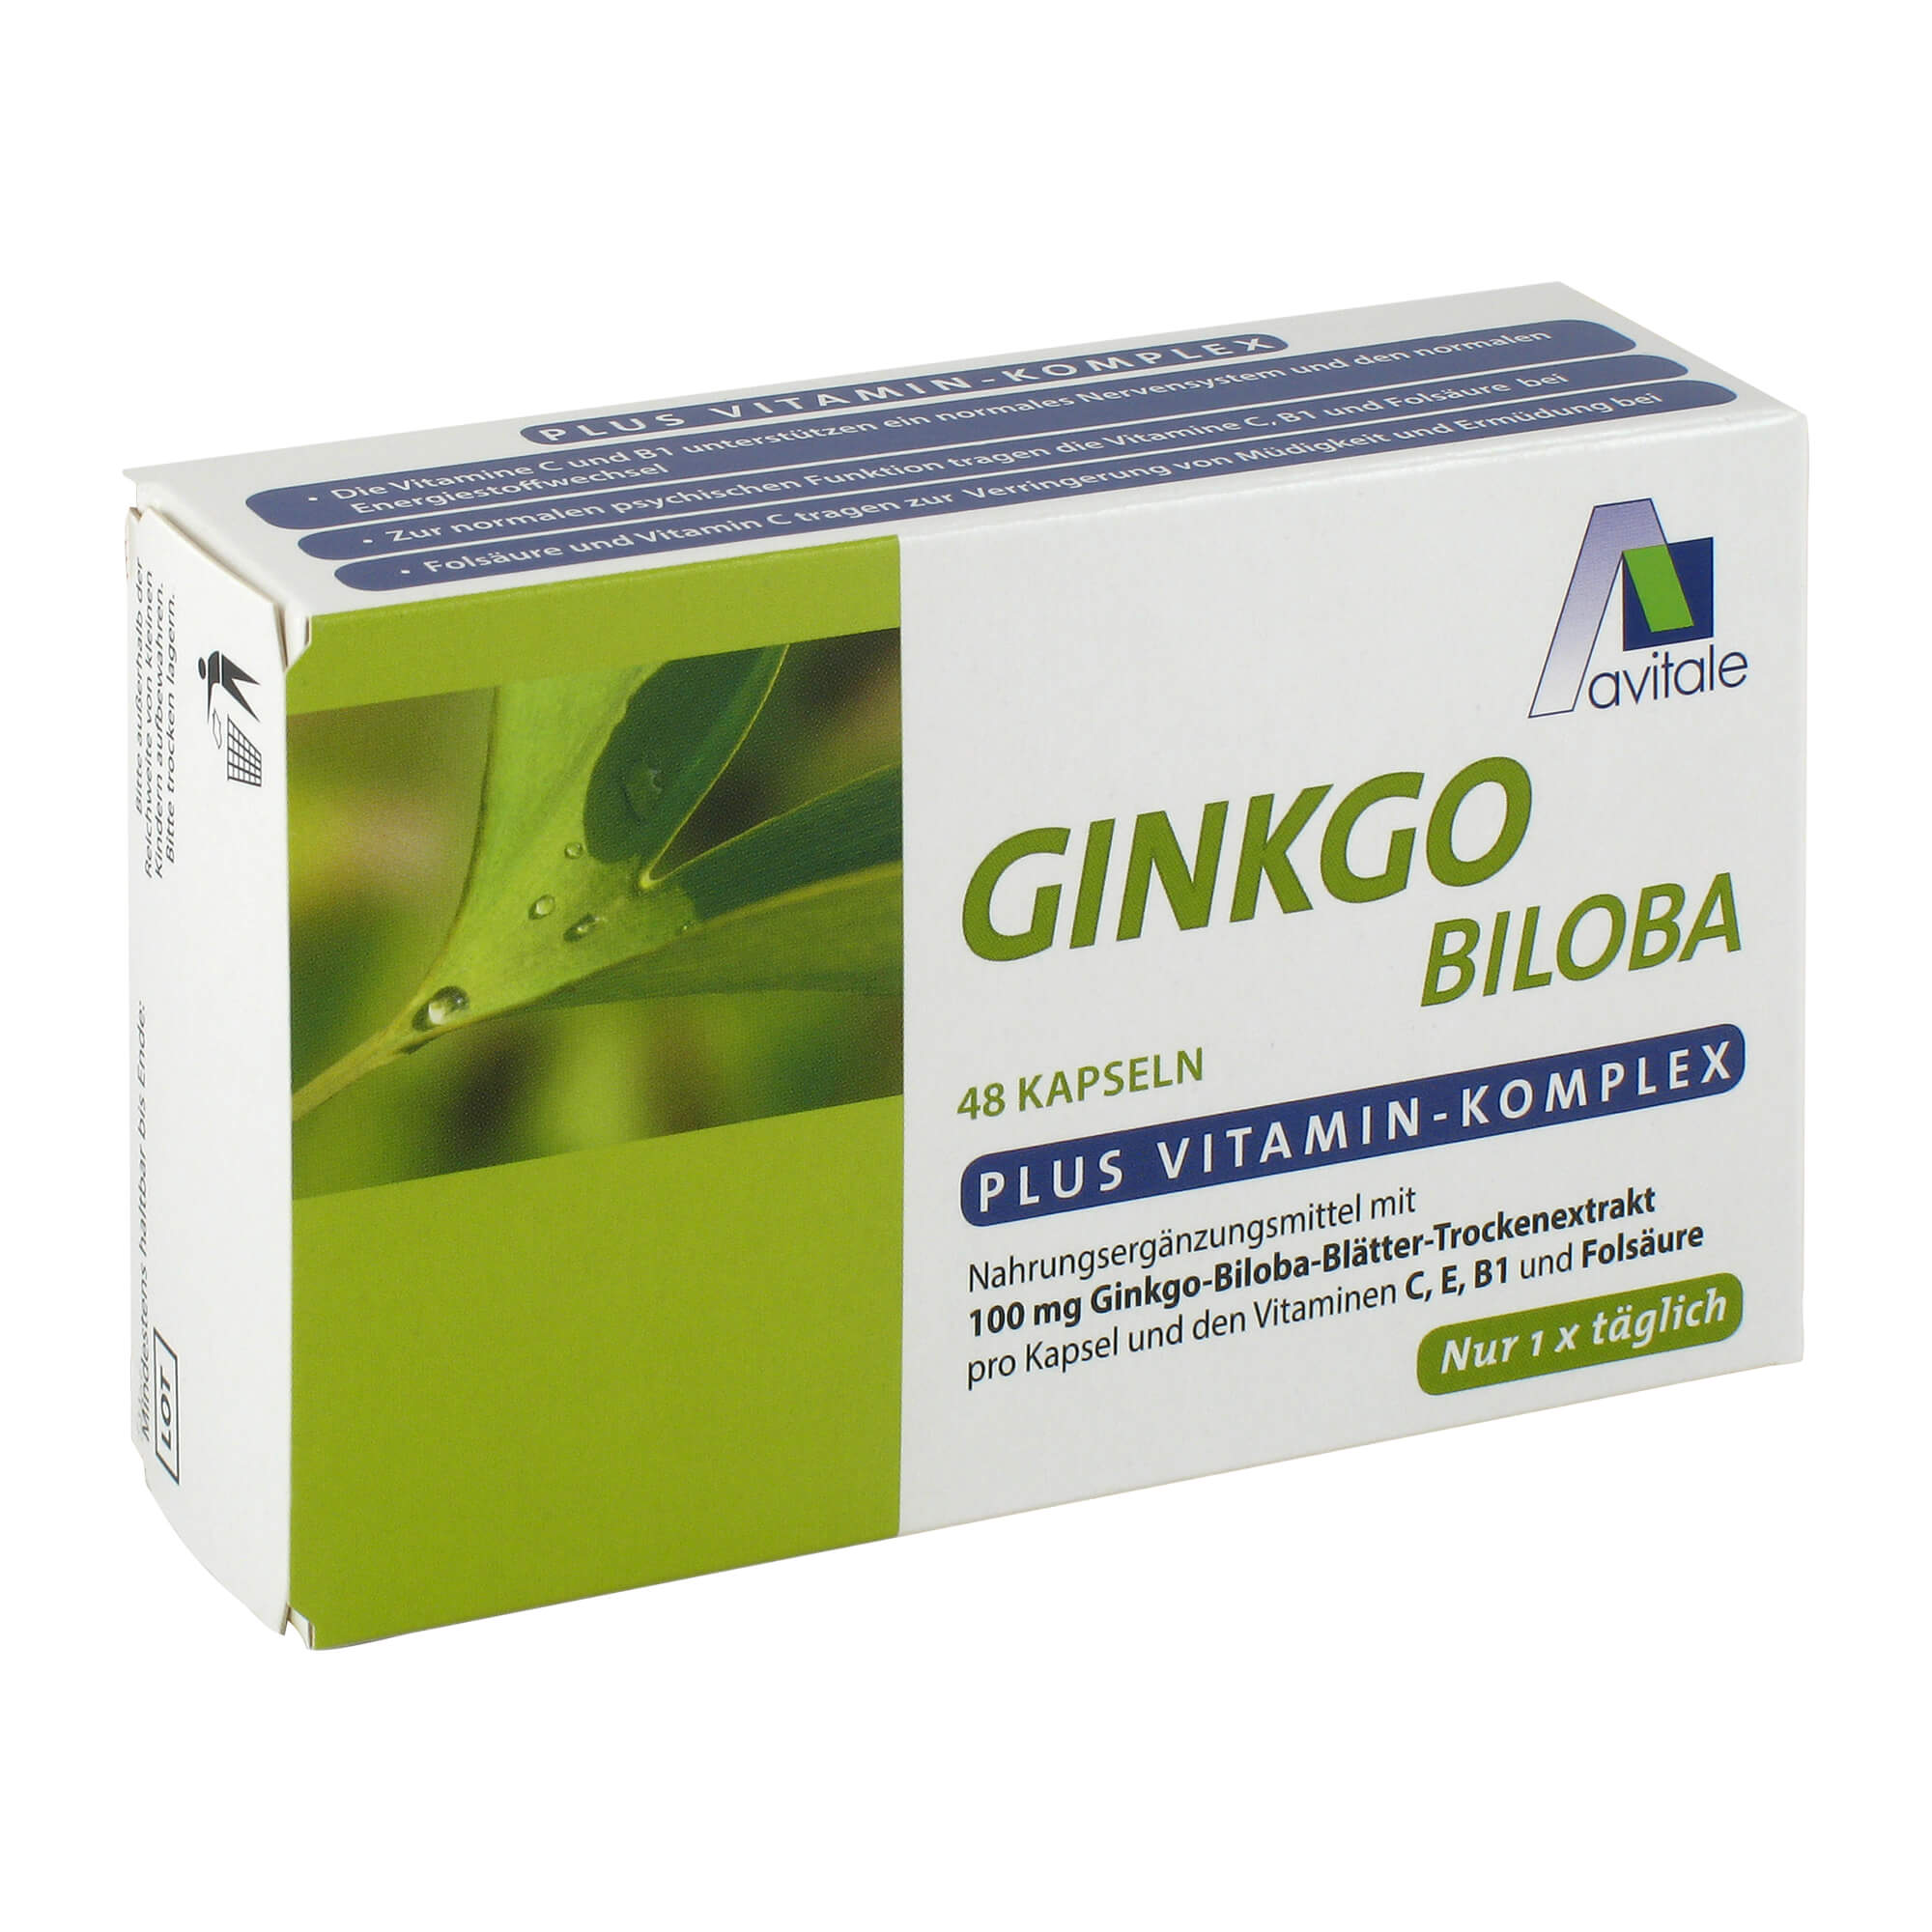 Nahrungsergänzungsmittel mit 100 mg Ginkgo-Biloba-Blätter-Trockenextrakt und den Vitaminen C, E, B1 und Folsäure.